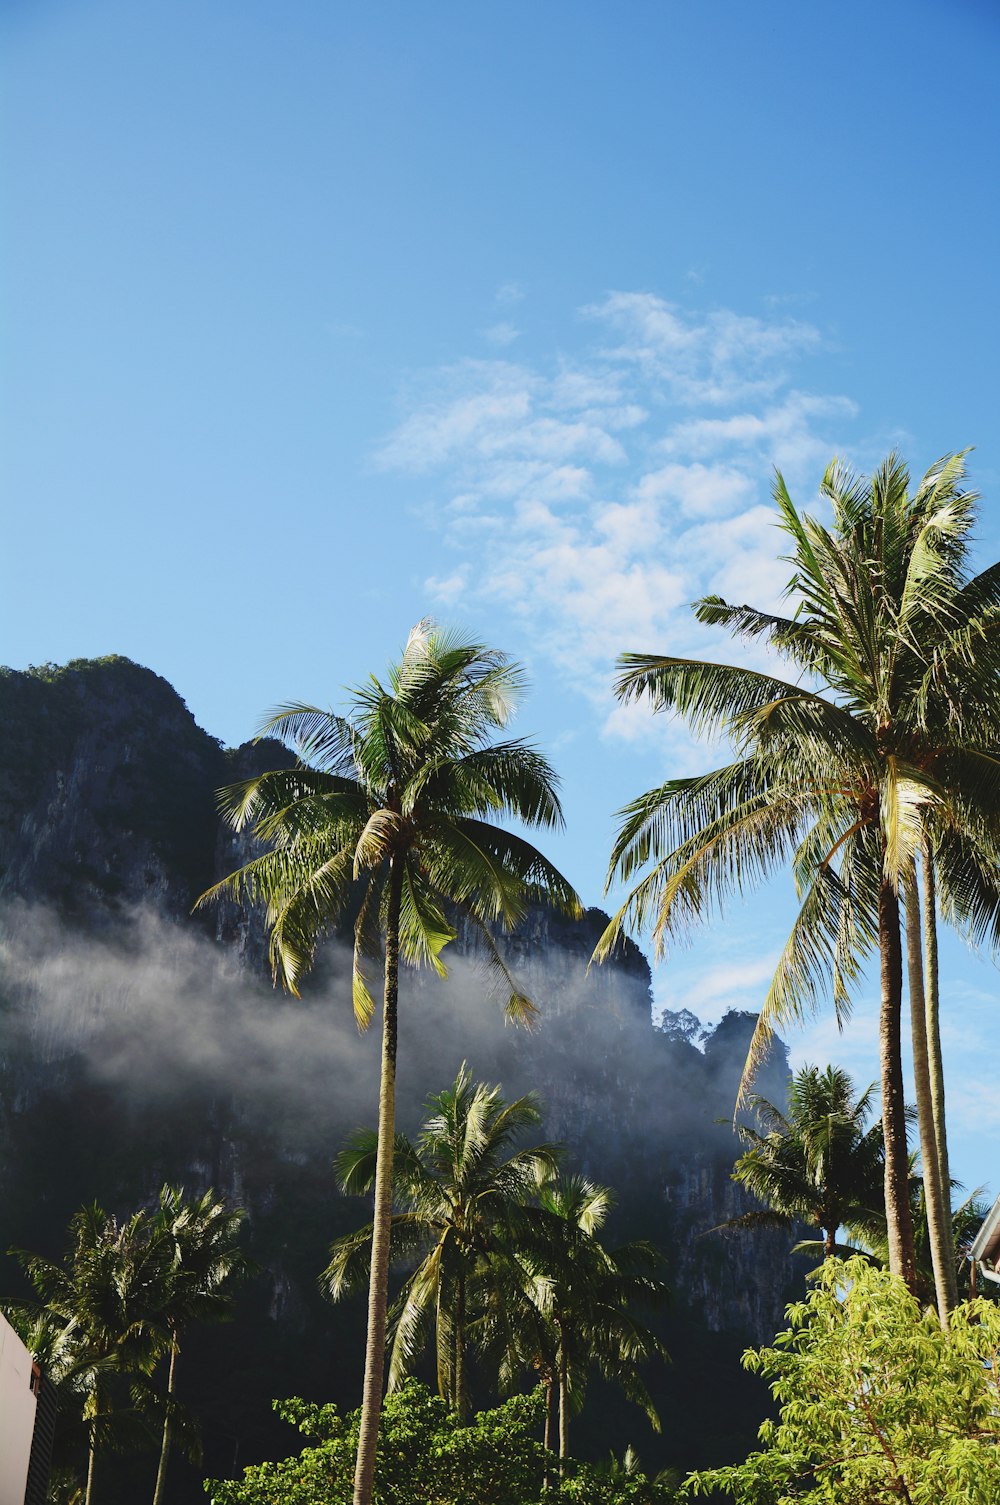 Photographie en contre-plongée de cocotiers sous des nuages blancs pendant la journée